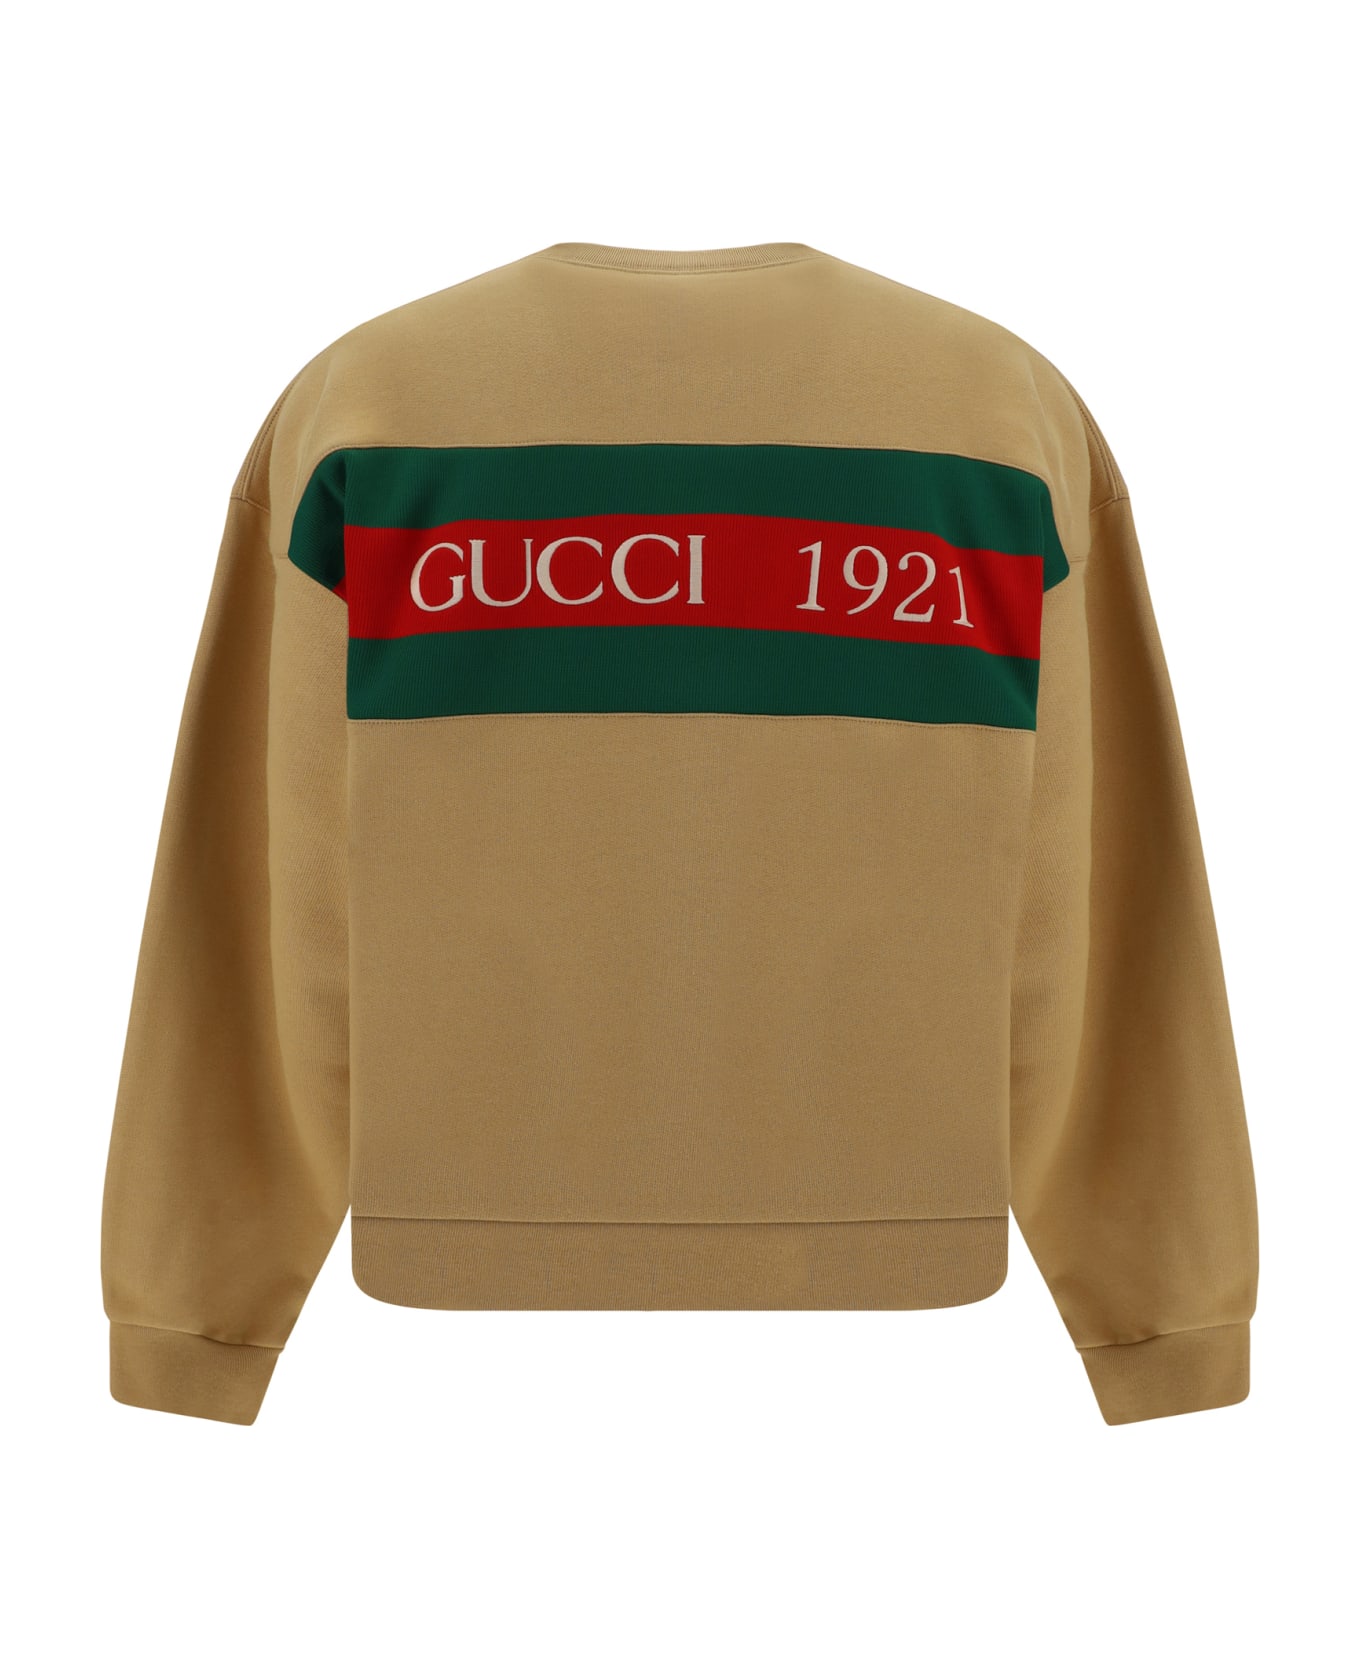 Gucci Sweatshirt - Camel/mix